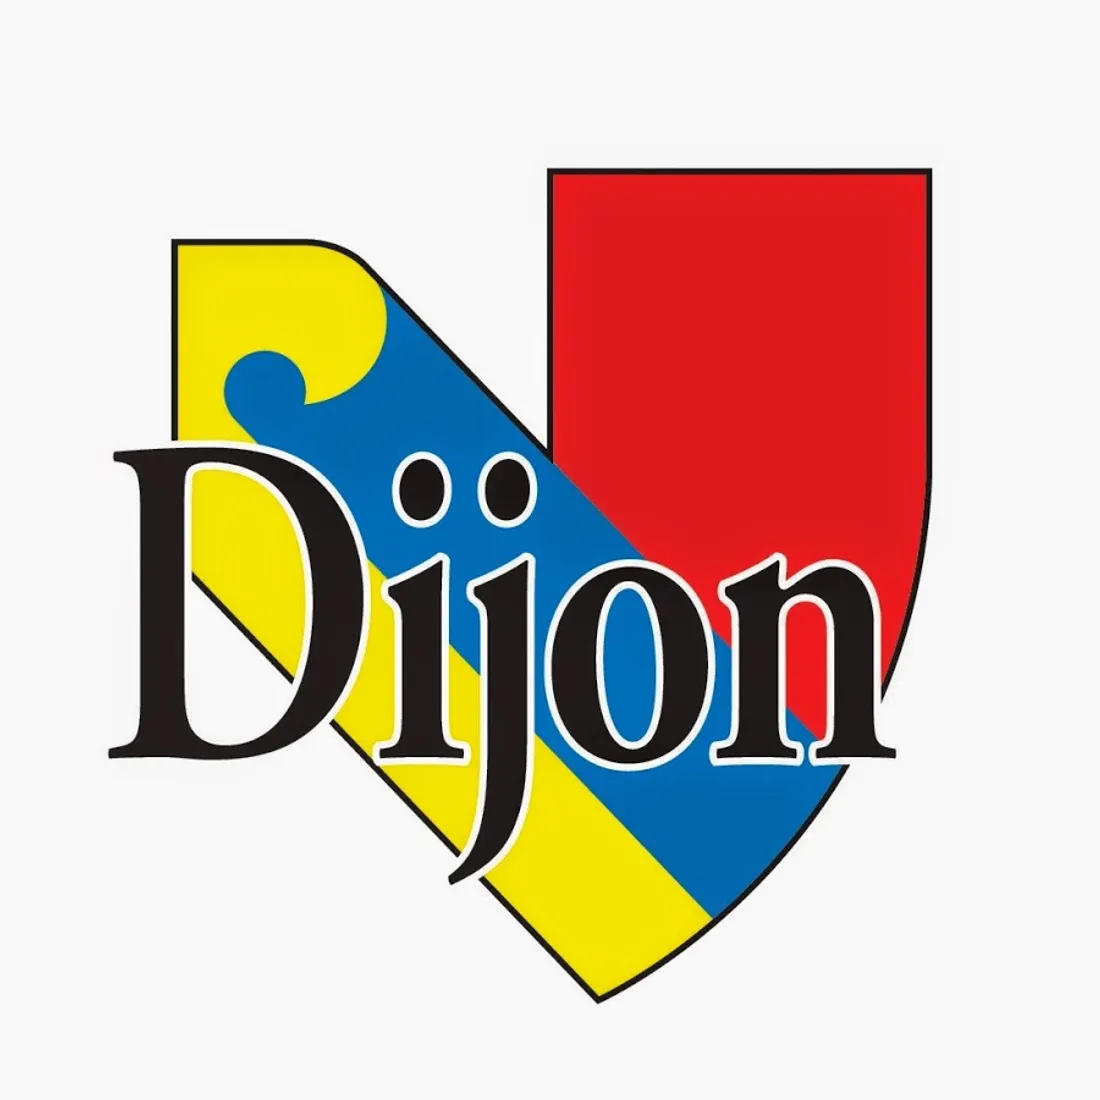 Mercredi 26 juillet, la Ville de Dijon a pris un arrêté pour interdire la consommation de "proto".